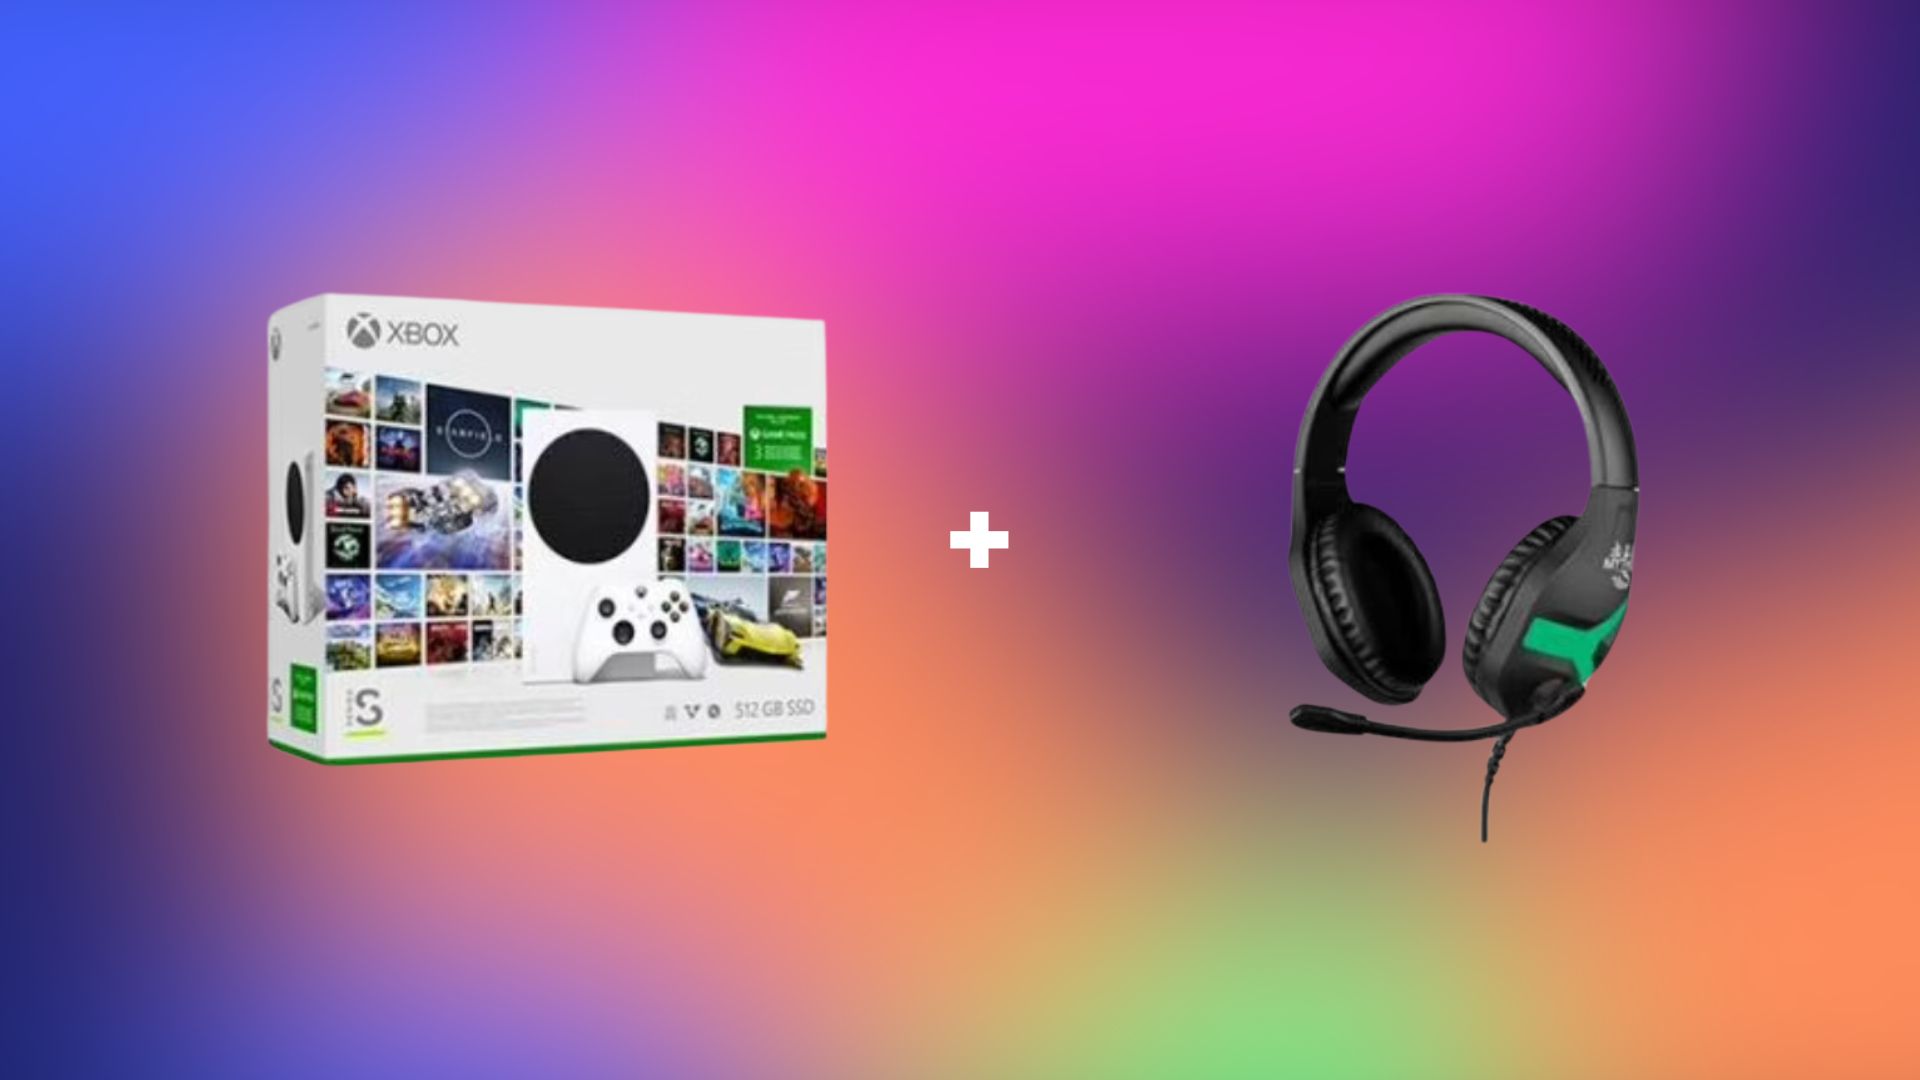 Nouveau casque Xbox : profitez de 6 mois de Dolby Atmos offerts